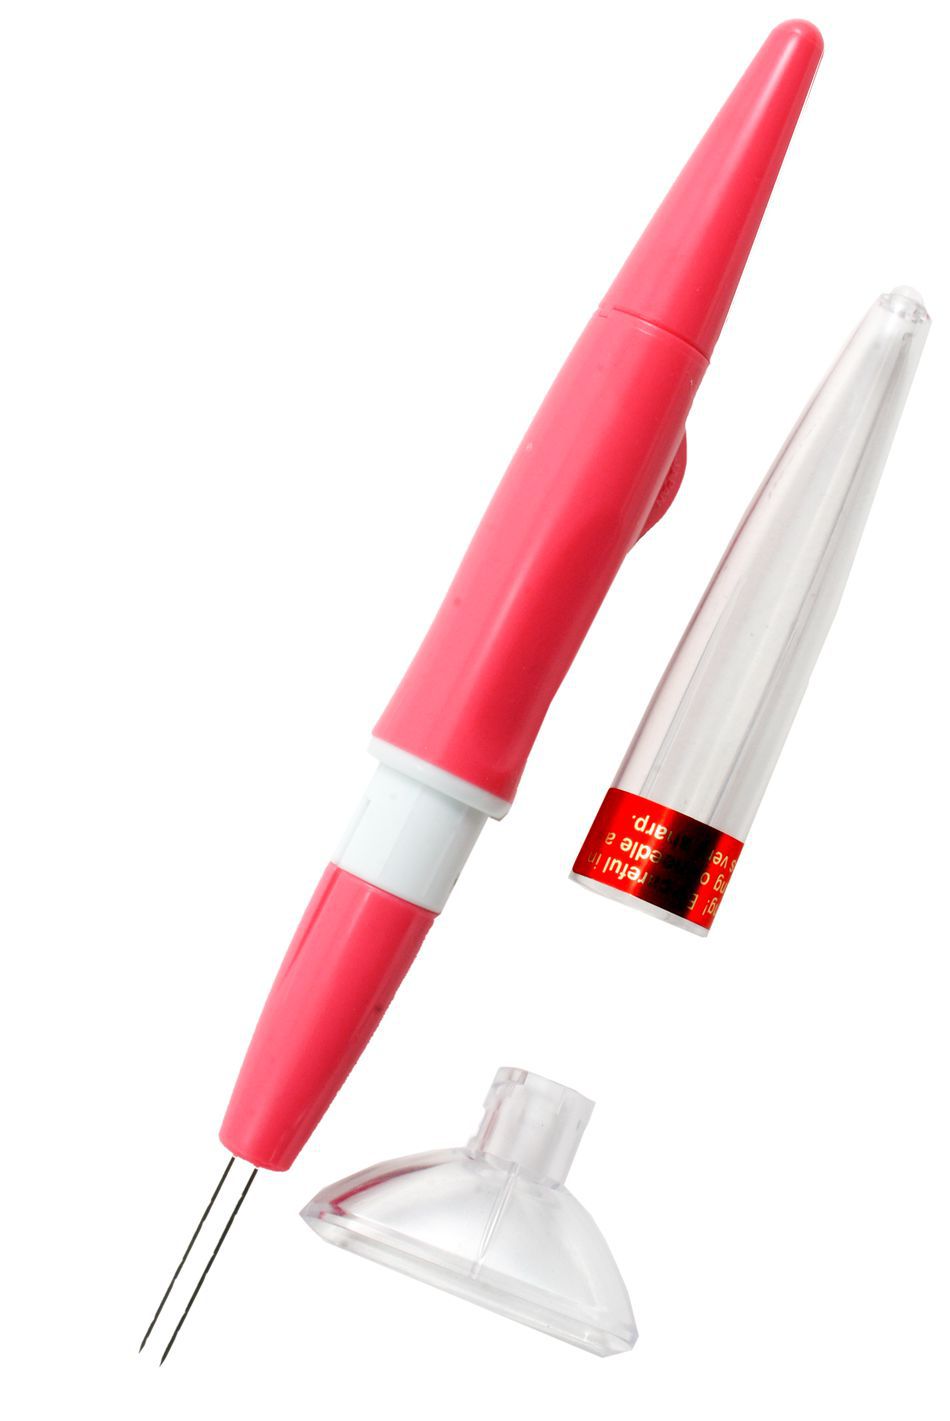 Felting Equipment Clover Pen Style Needle Felting Tool